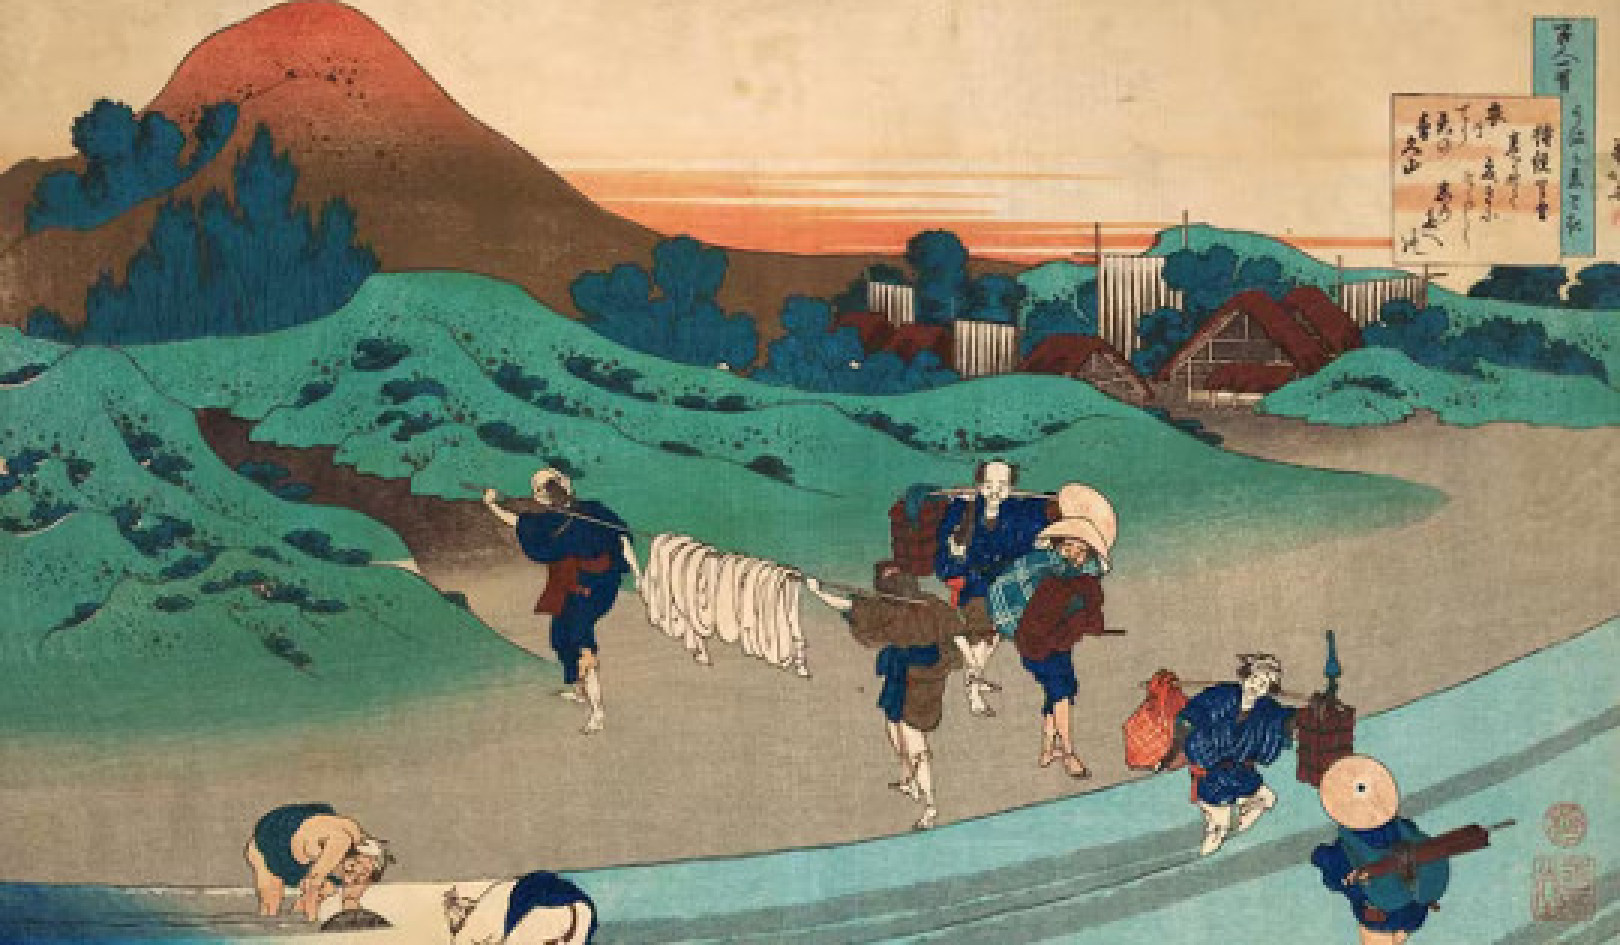 수백 년간의 자기 고립이 일본을 지속 가능한 사회로 만든 방법